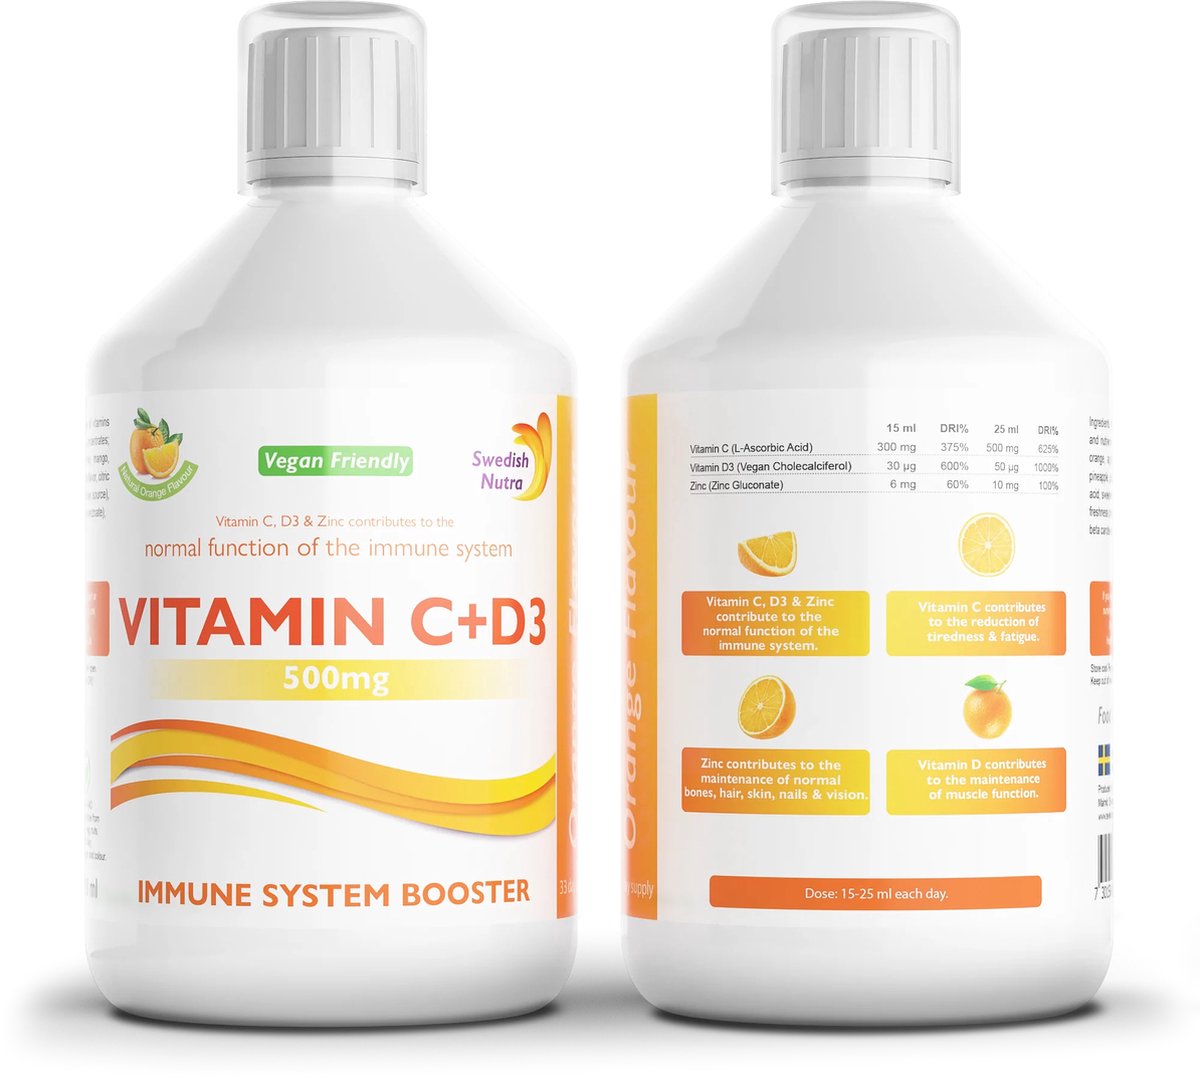 Swedish Nutra- Vitamin C + D3 en Zinc - Vloeibaar supplement - Veganistisch vriendelijk- Boost jouw immuunsysteem